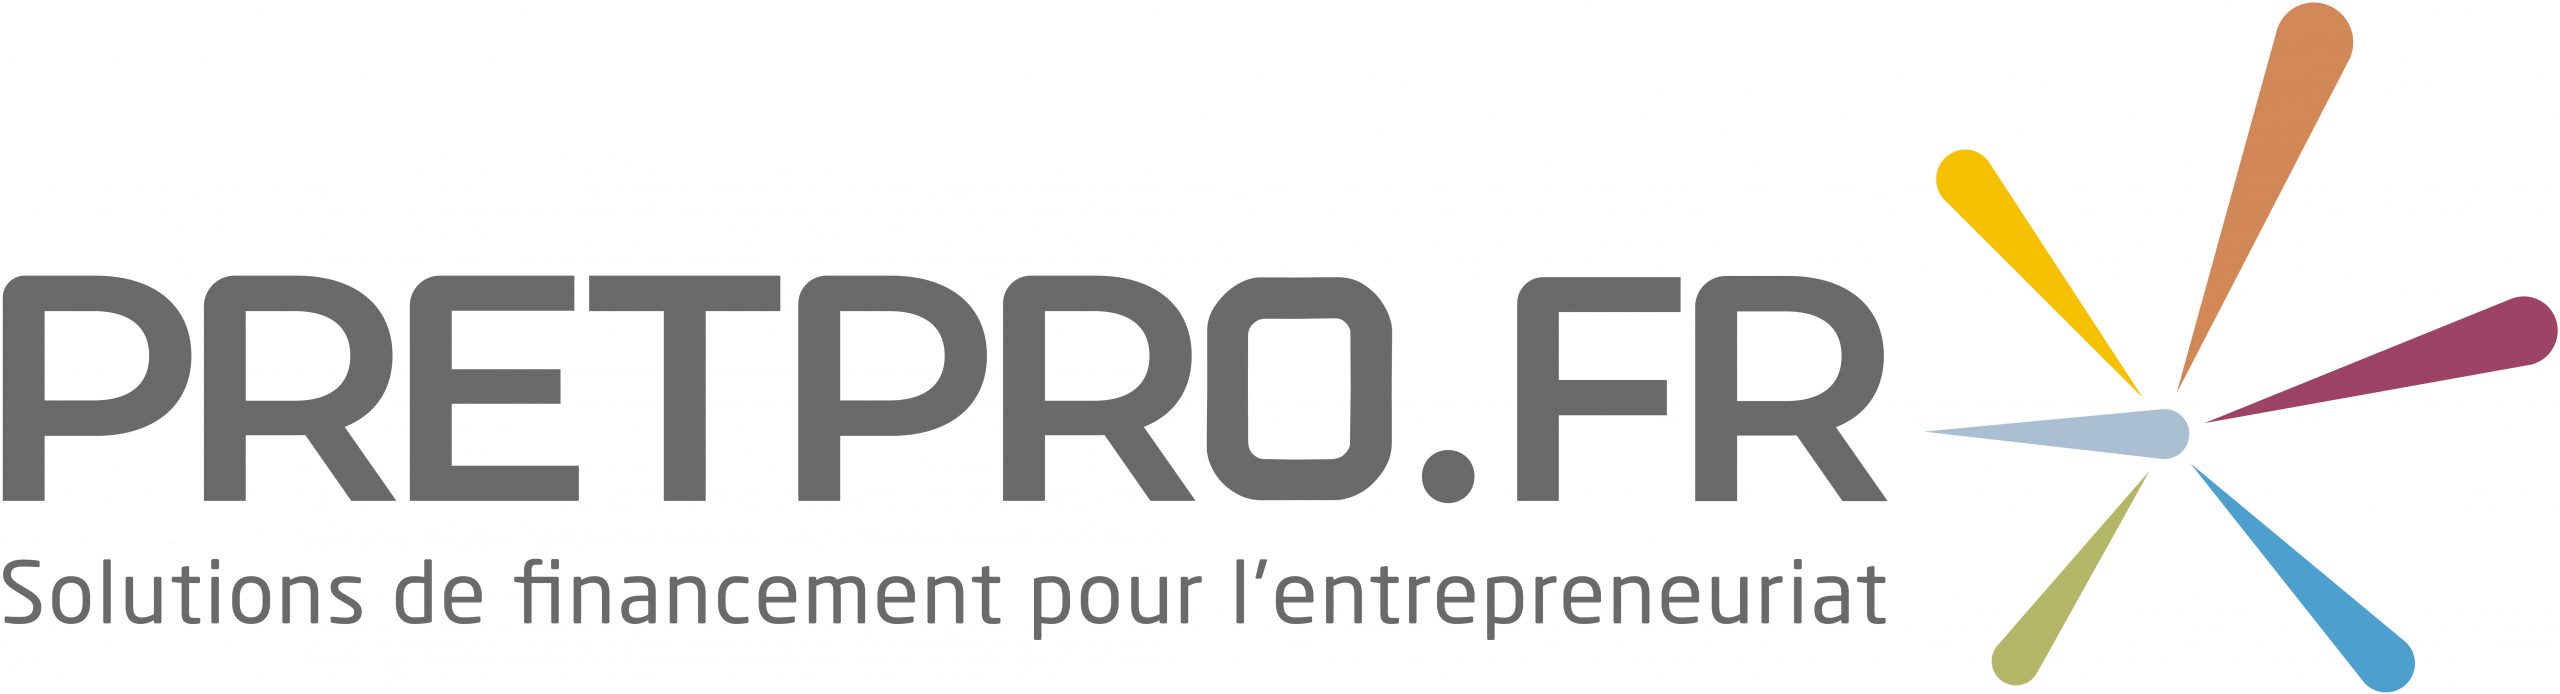 Pretpro.fr – Grand-Est